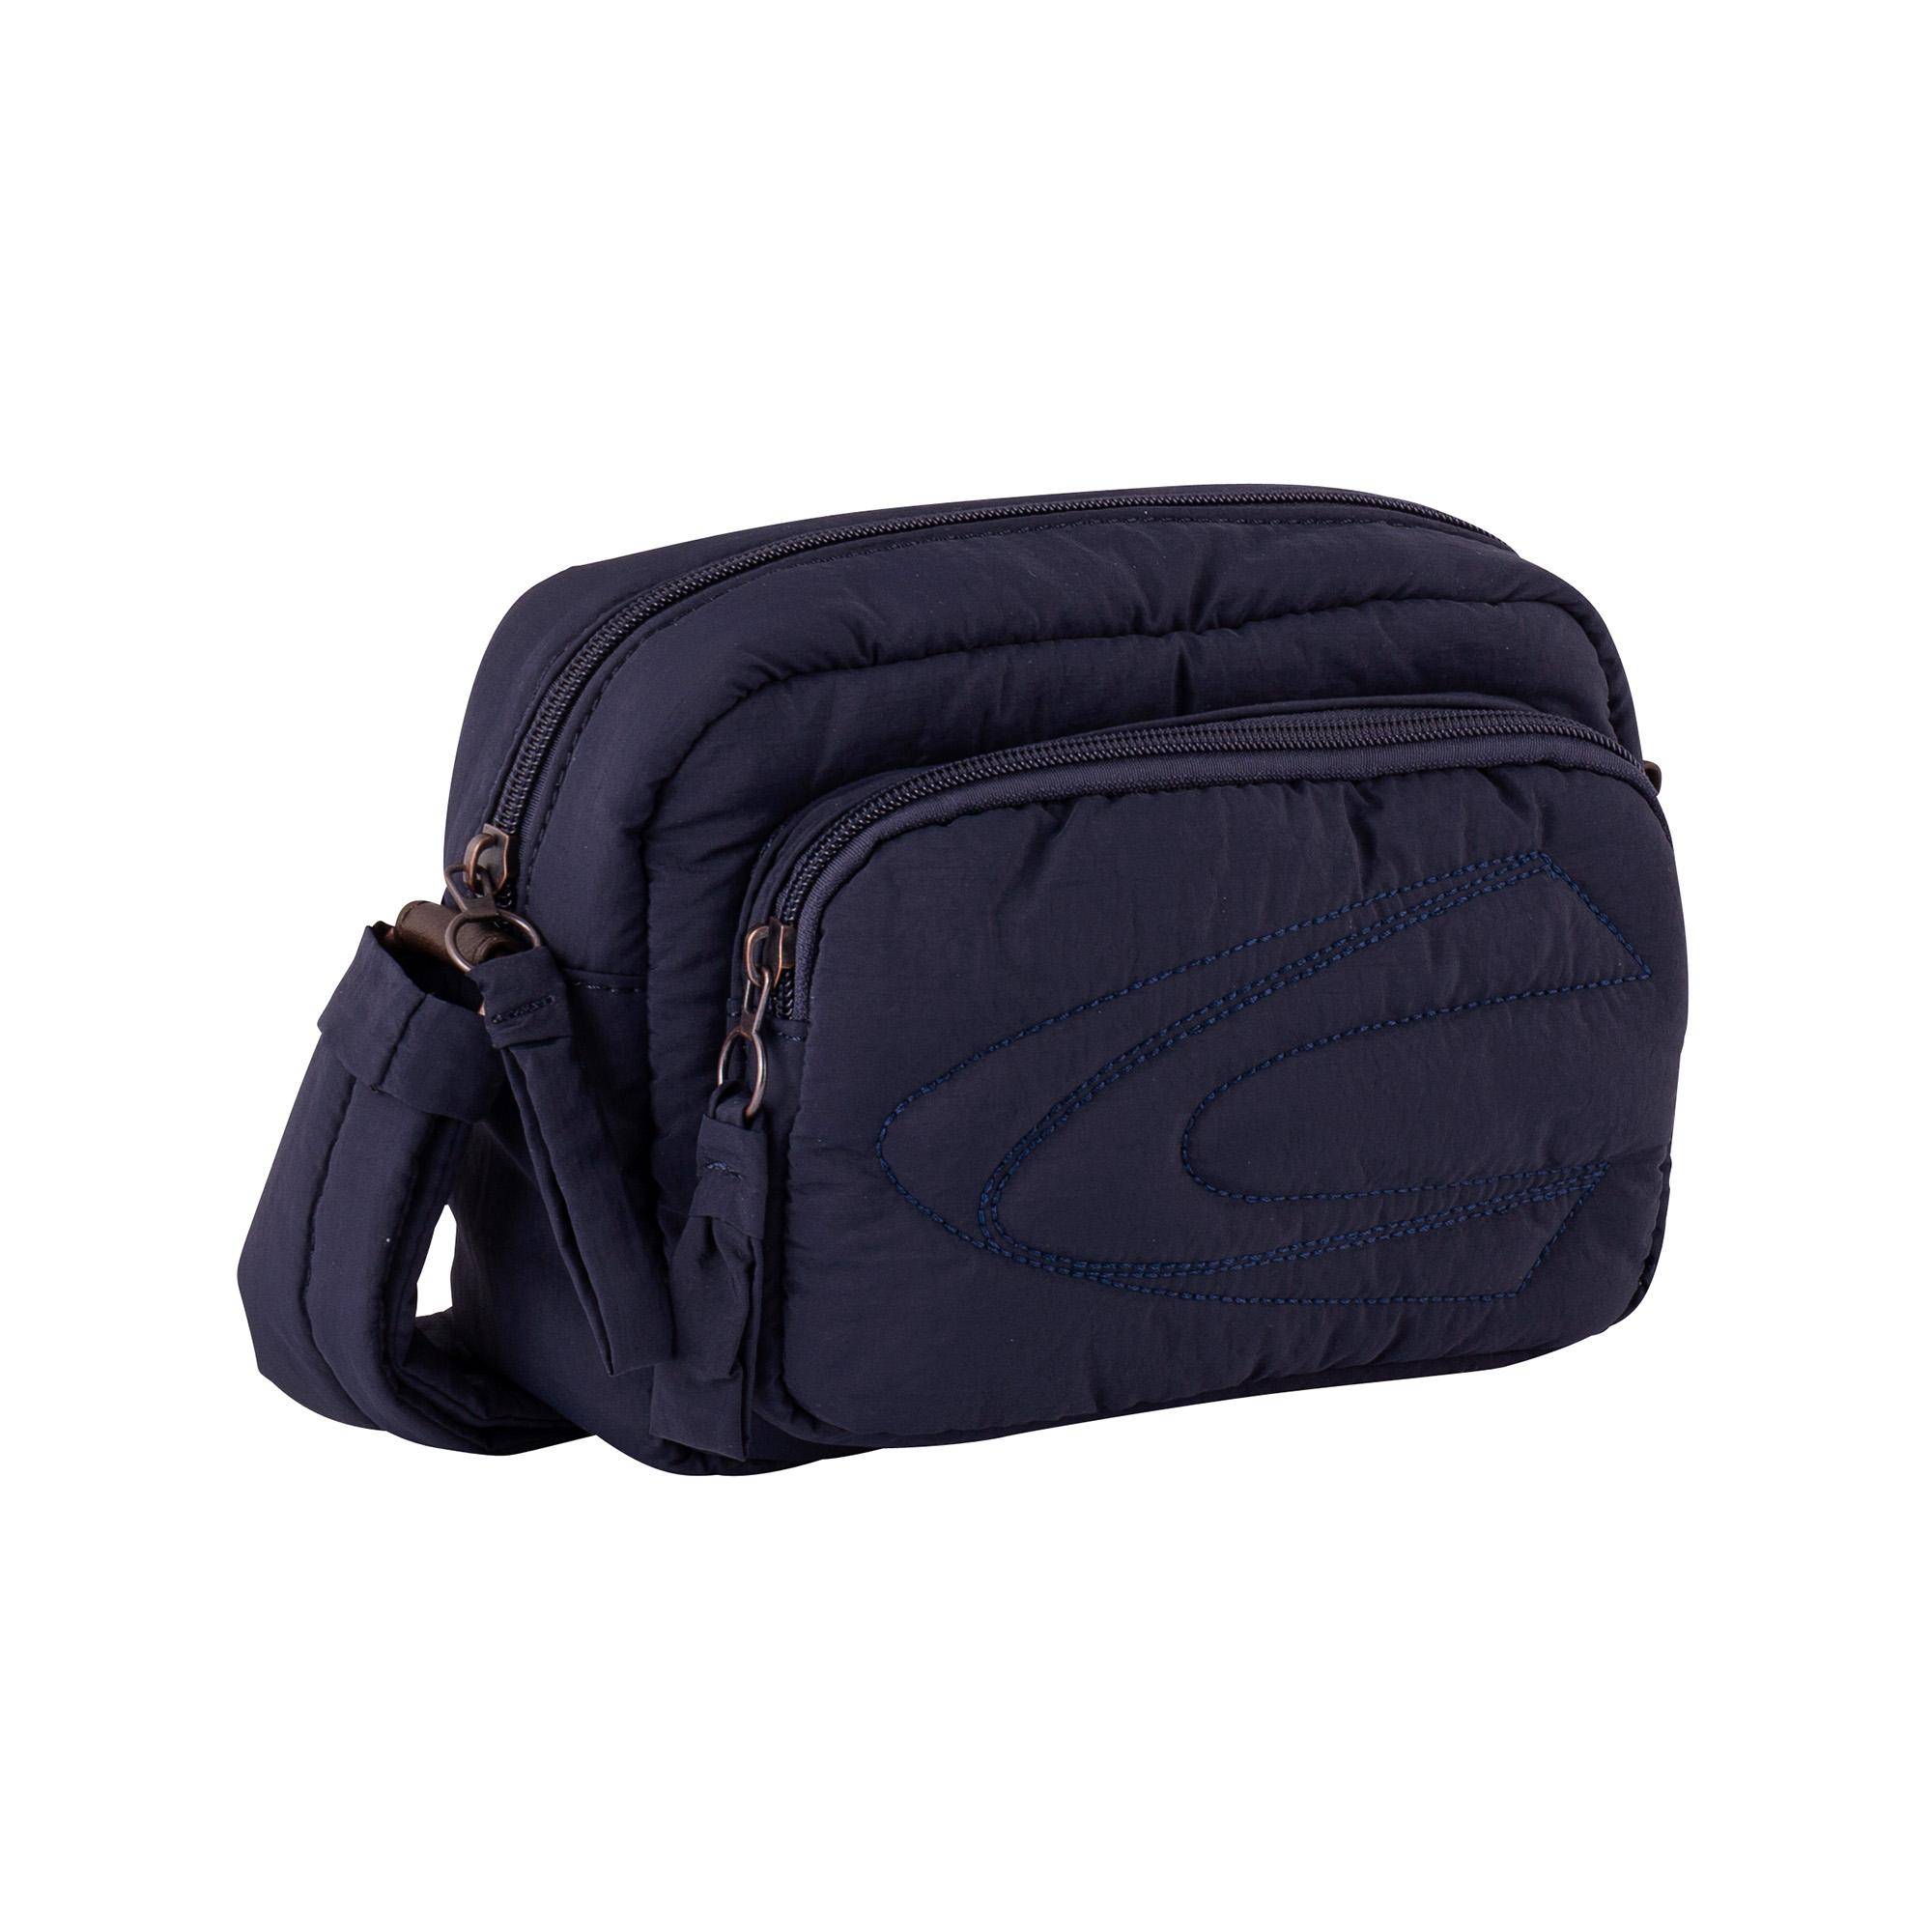 Женская сумка Camel Active bags, синяя, цвет синий, размер One Size